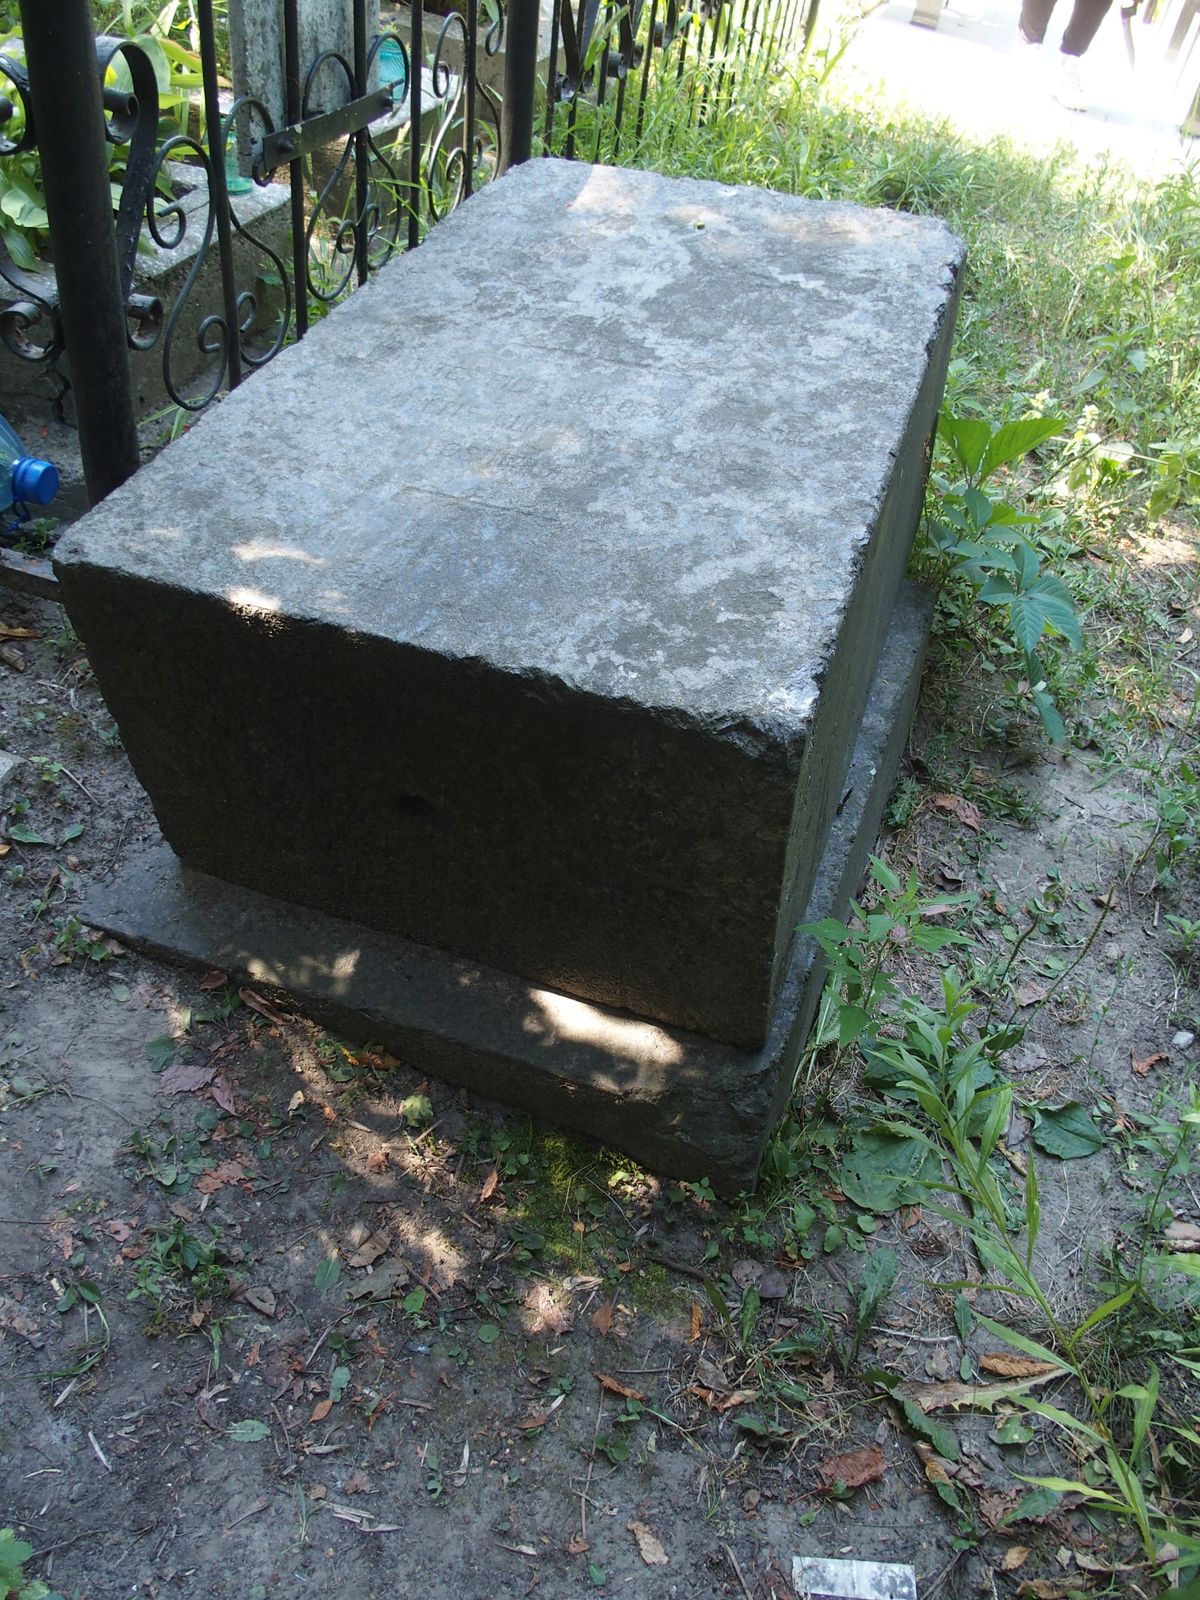 Tombstone of Thomas Modzelewski, Baykova cemetery, Kyiv, as of 2021